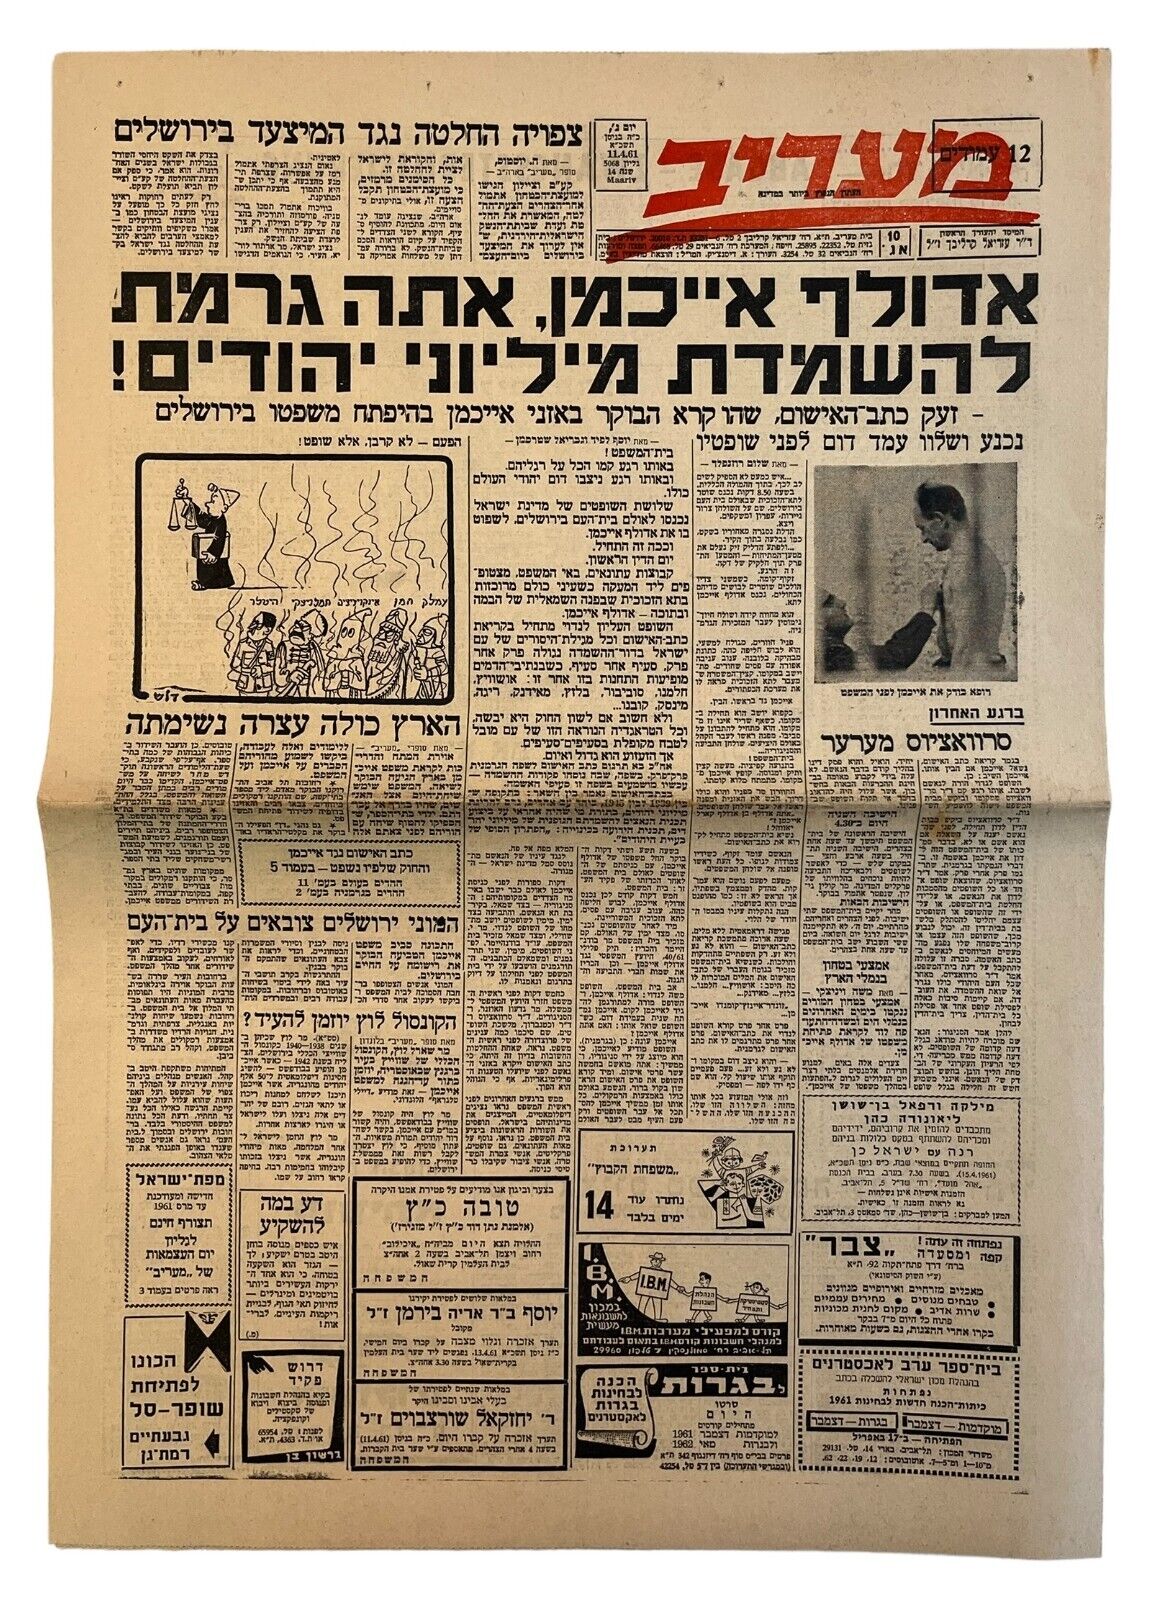 Adolf Eichmann Trail in Israel, Israeli Newspaper 